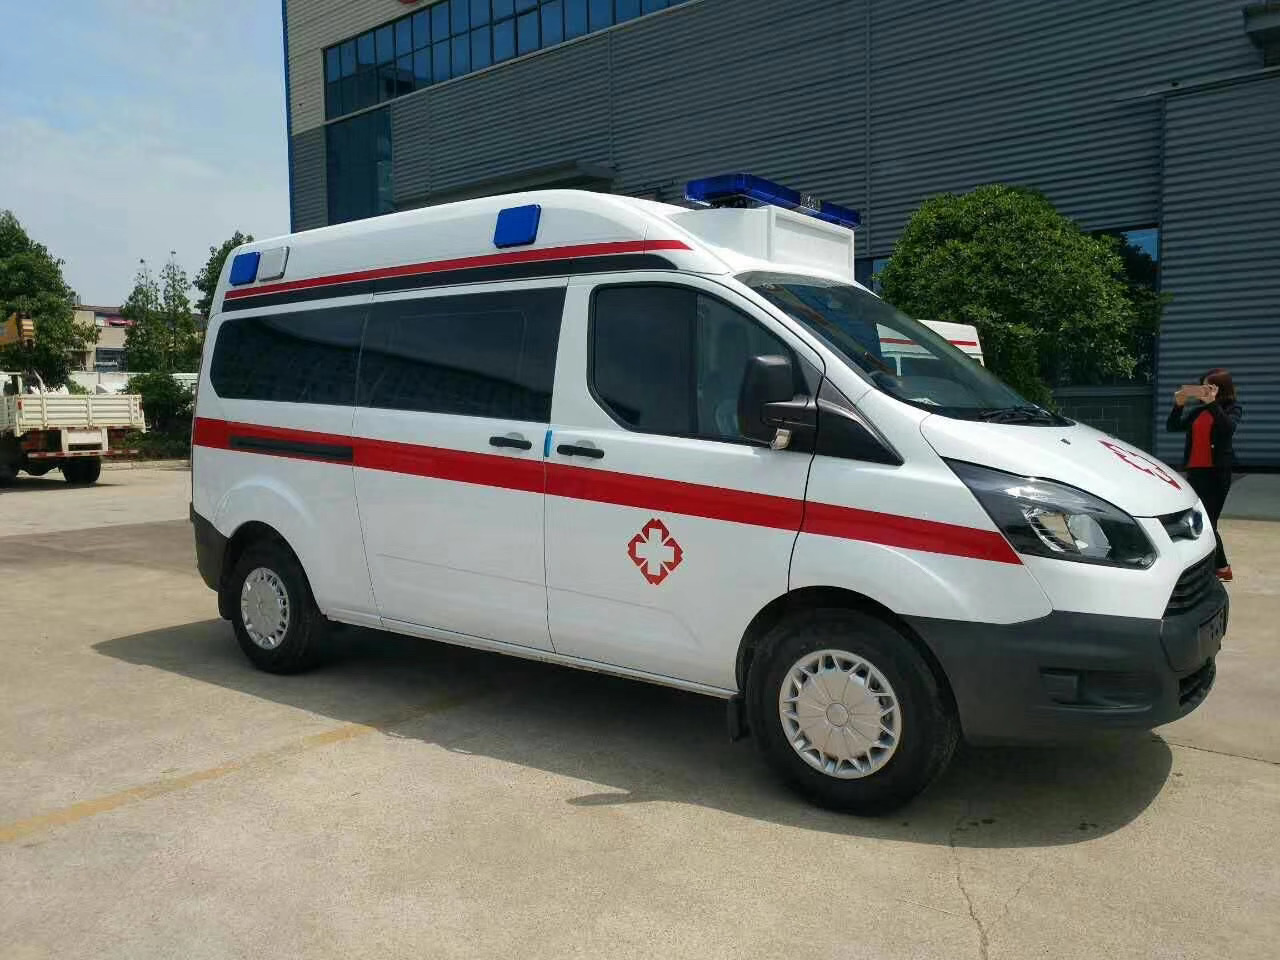 漳平市出院转院救护车